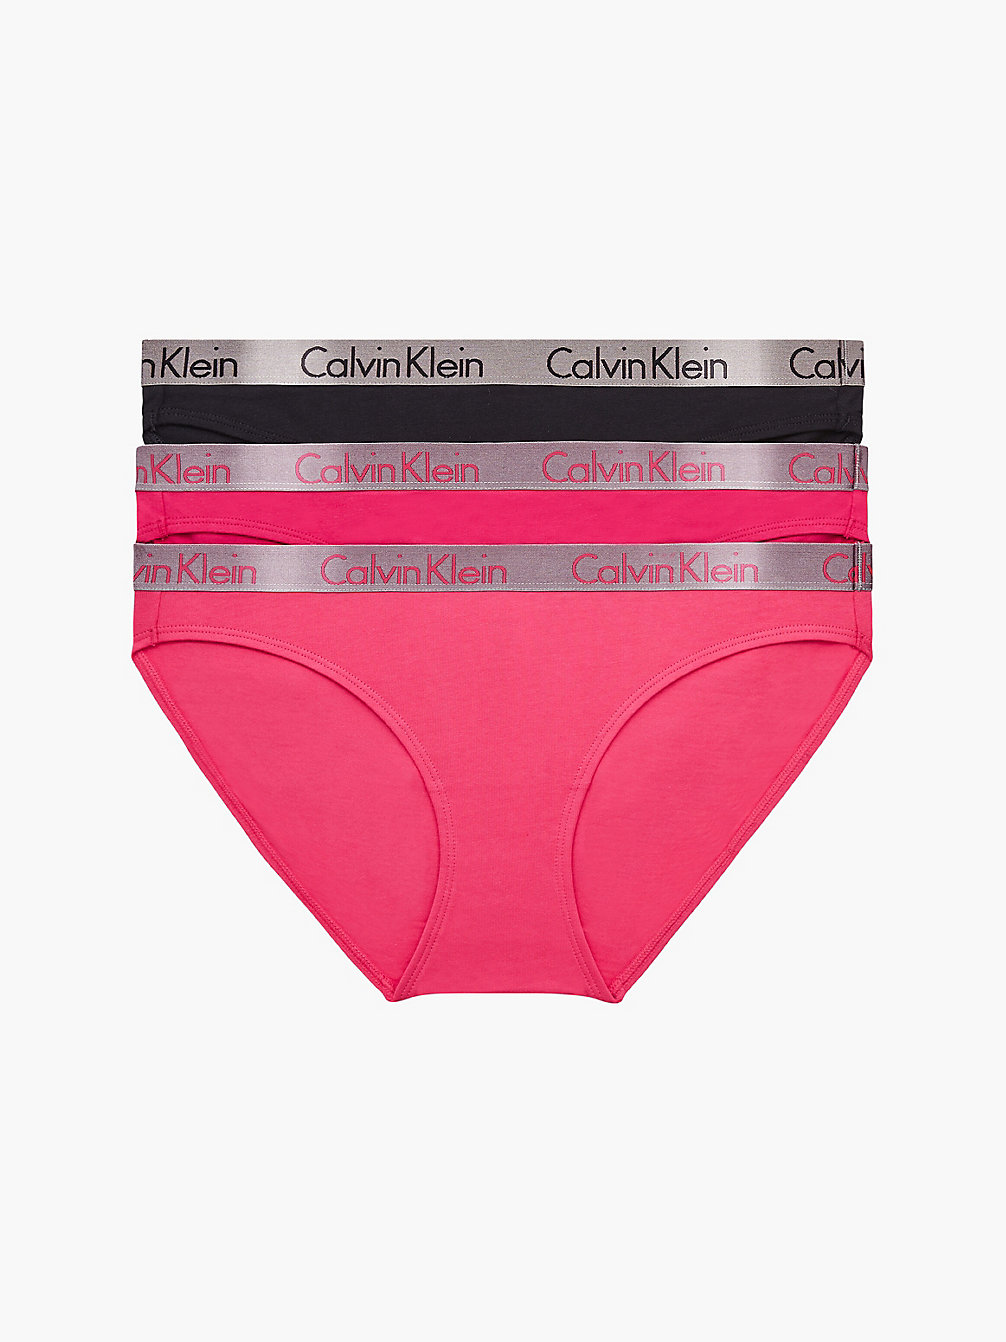 PINK SPLENDOR/BRIAR ROSE/BLACK Lot De 3 Culottes - Radiant Cotton undefined femmes Calvin Klein